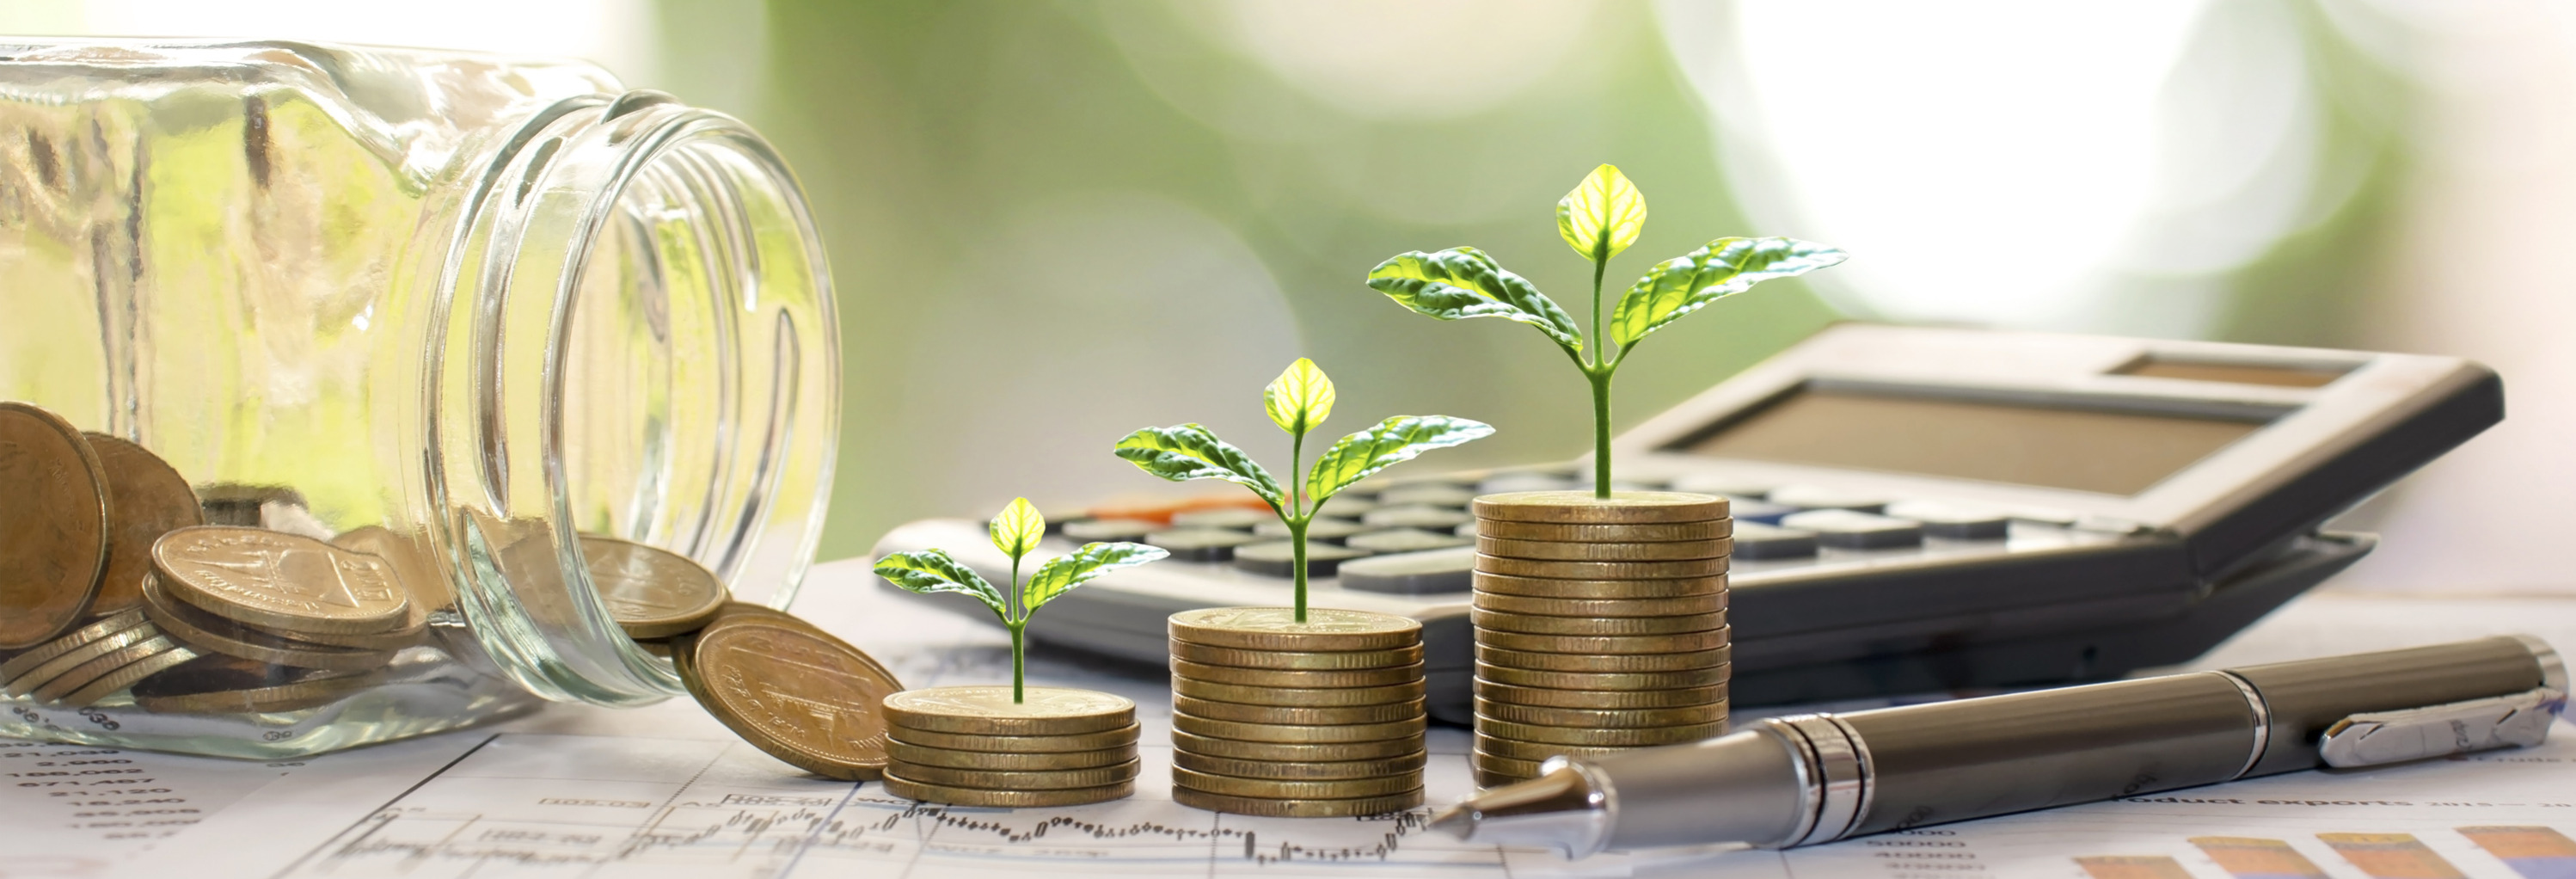 Sustainable Finance Nachhaltige Finanzierung, Green Deal